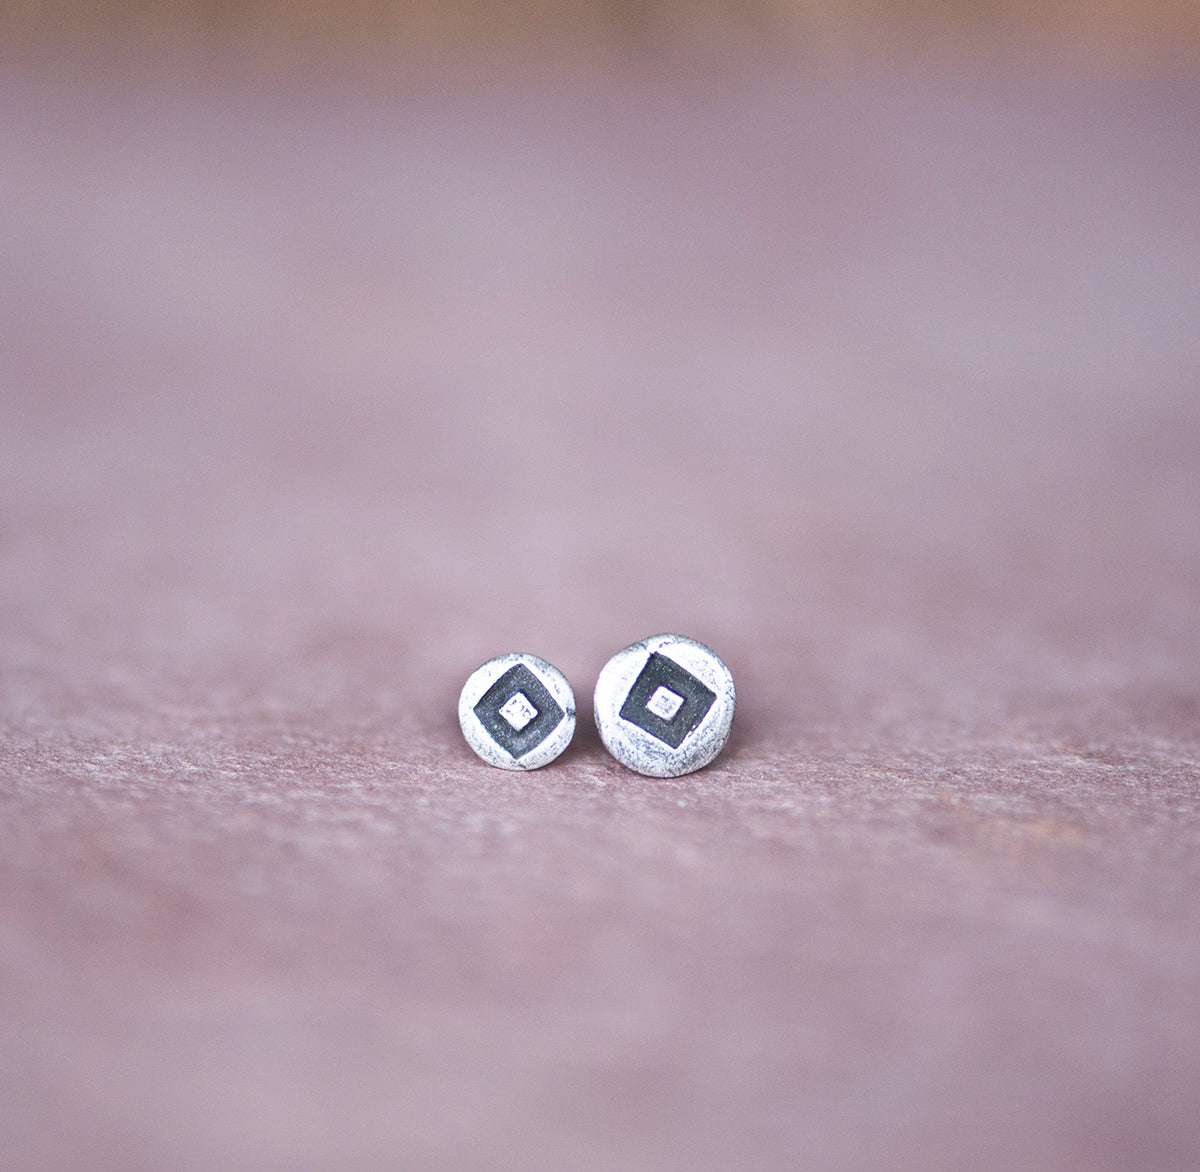 Asymmetrical Geometric Sterling Stud Earrings, 5mm - Jester Swink